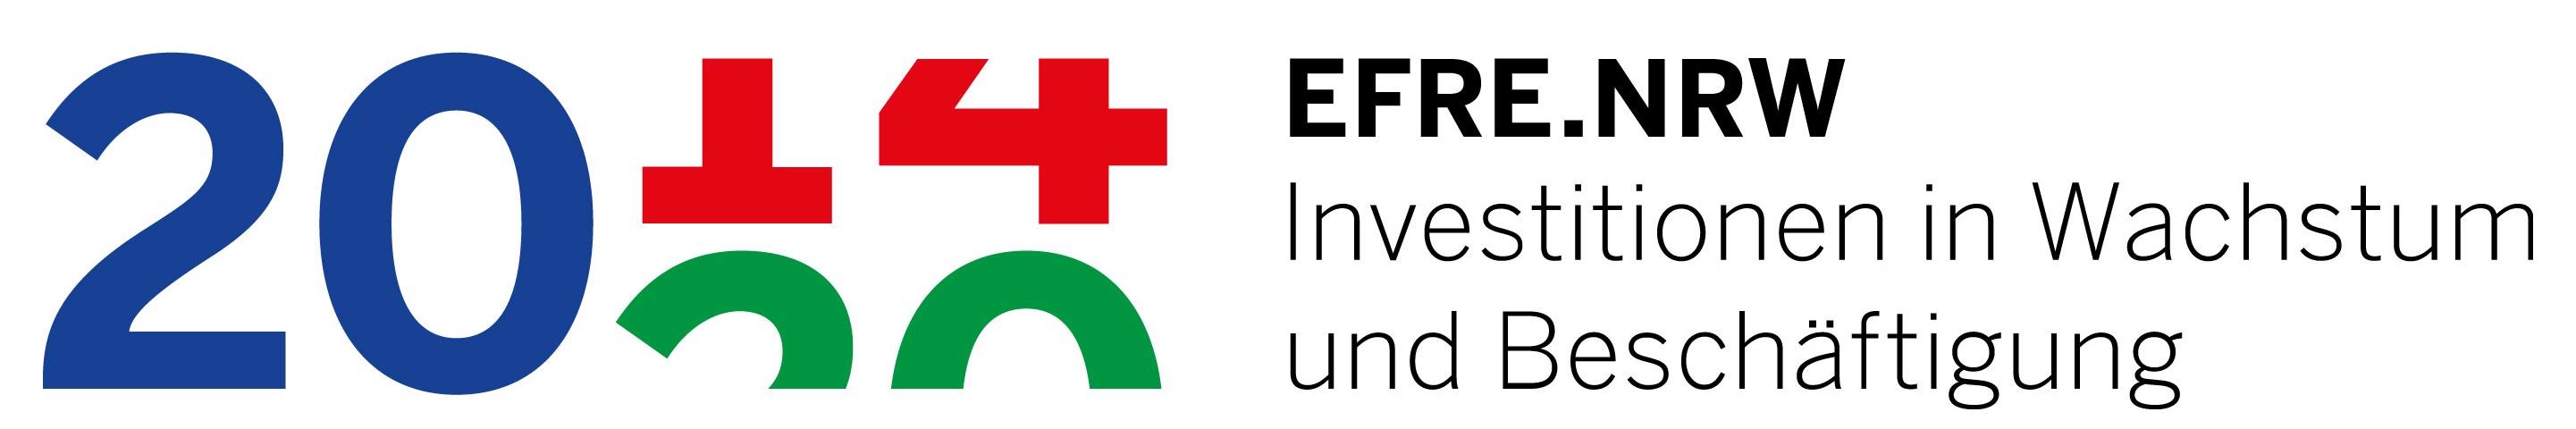 Logo: efre-nrw_investitionen-in-wachstum-und-beschaeftigung-2014-2020.jpg